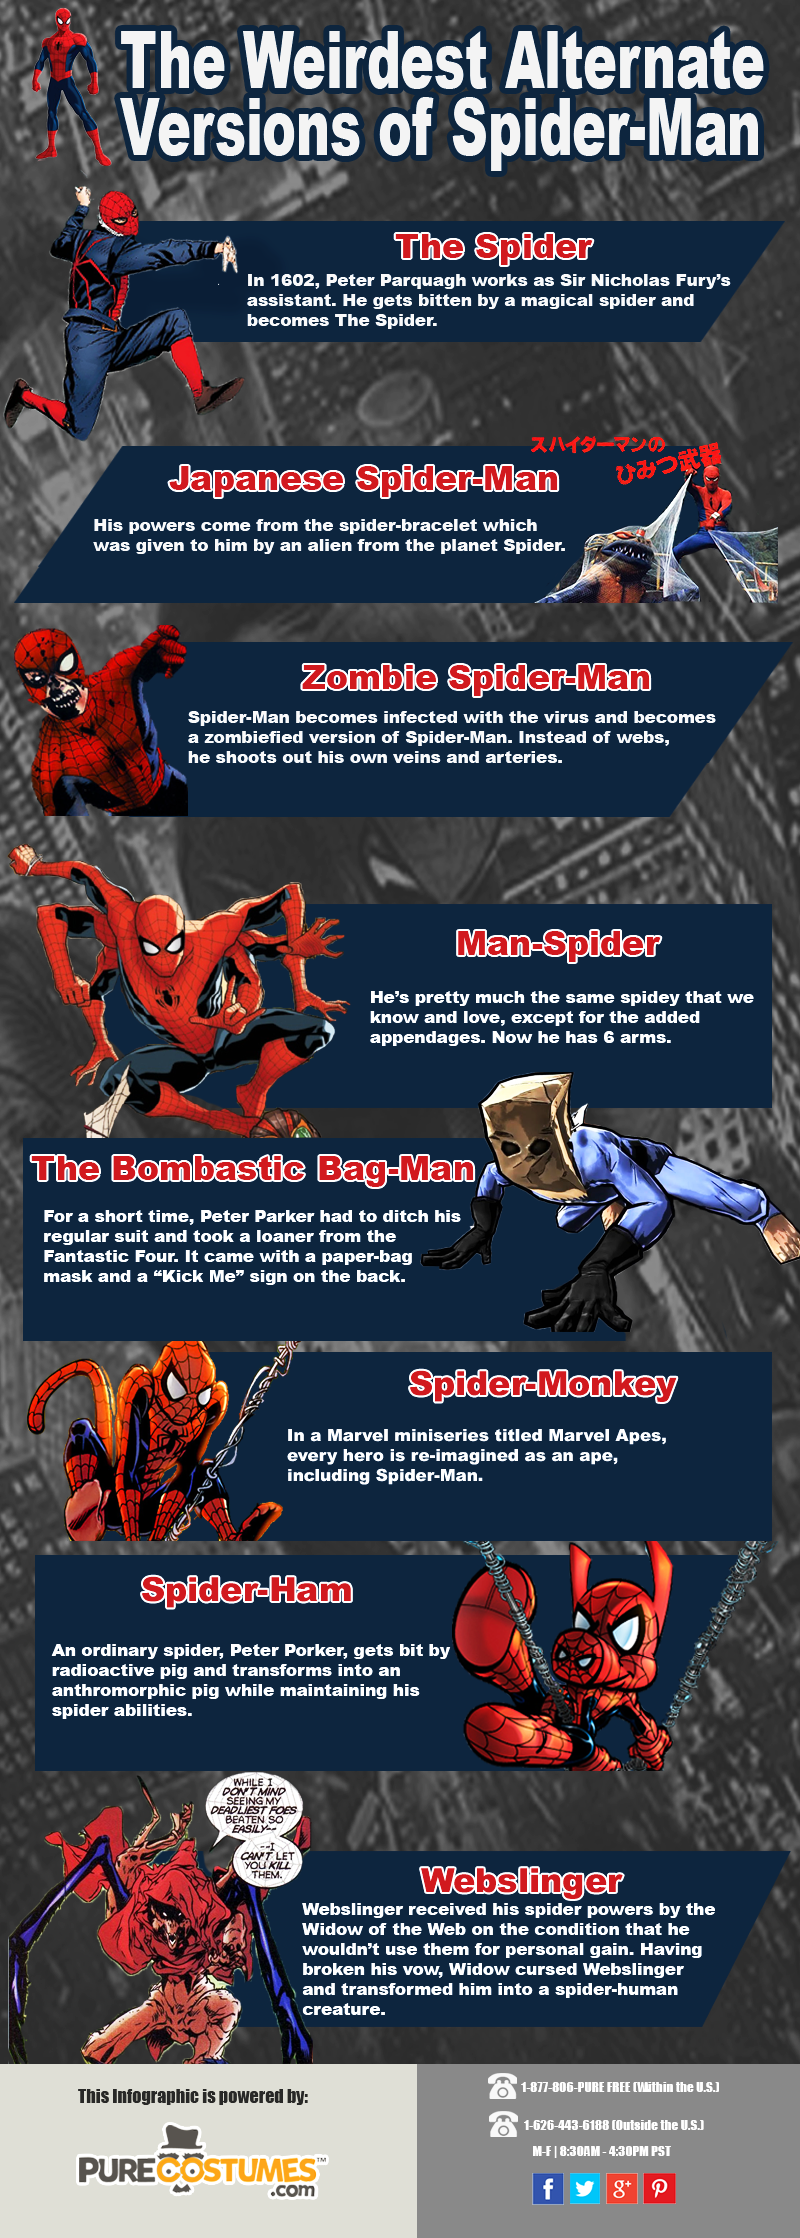 Weirdest Alternate Versions of Spider-Man